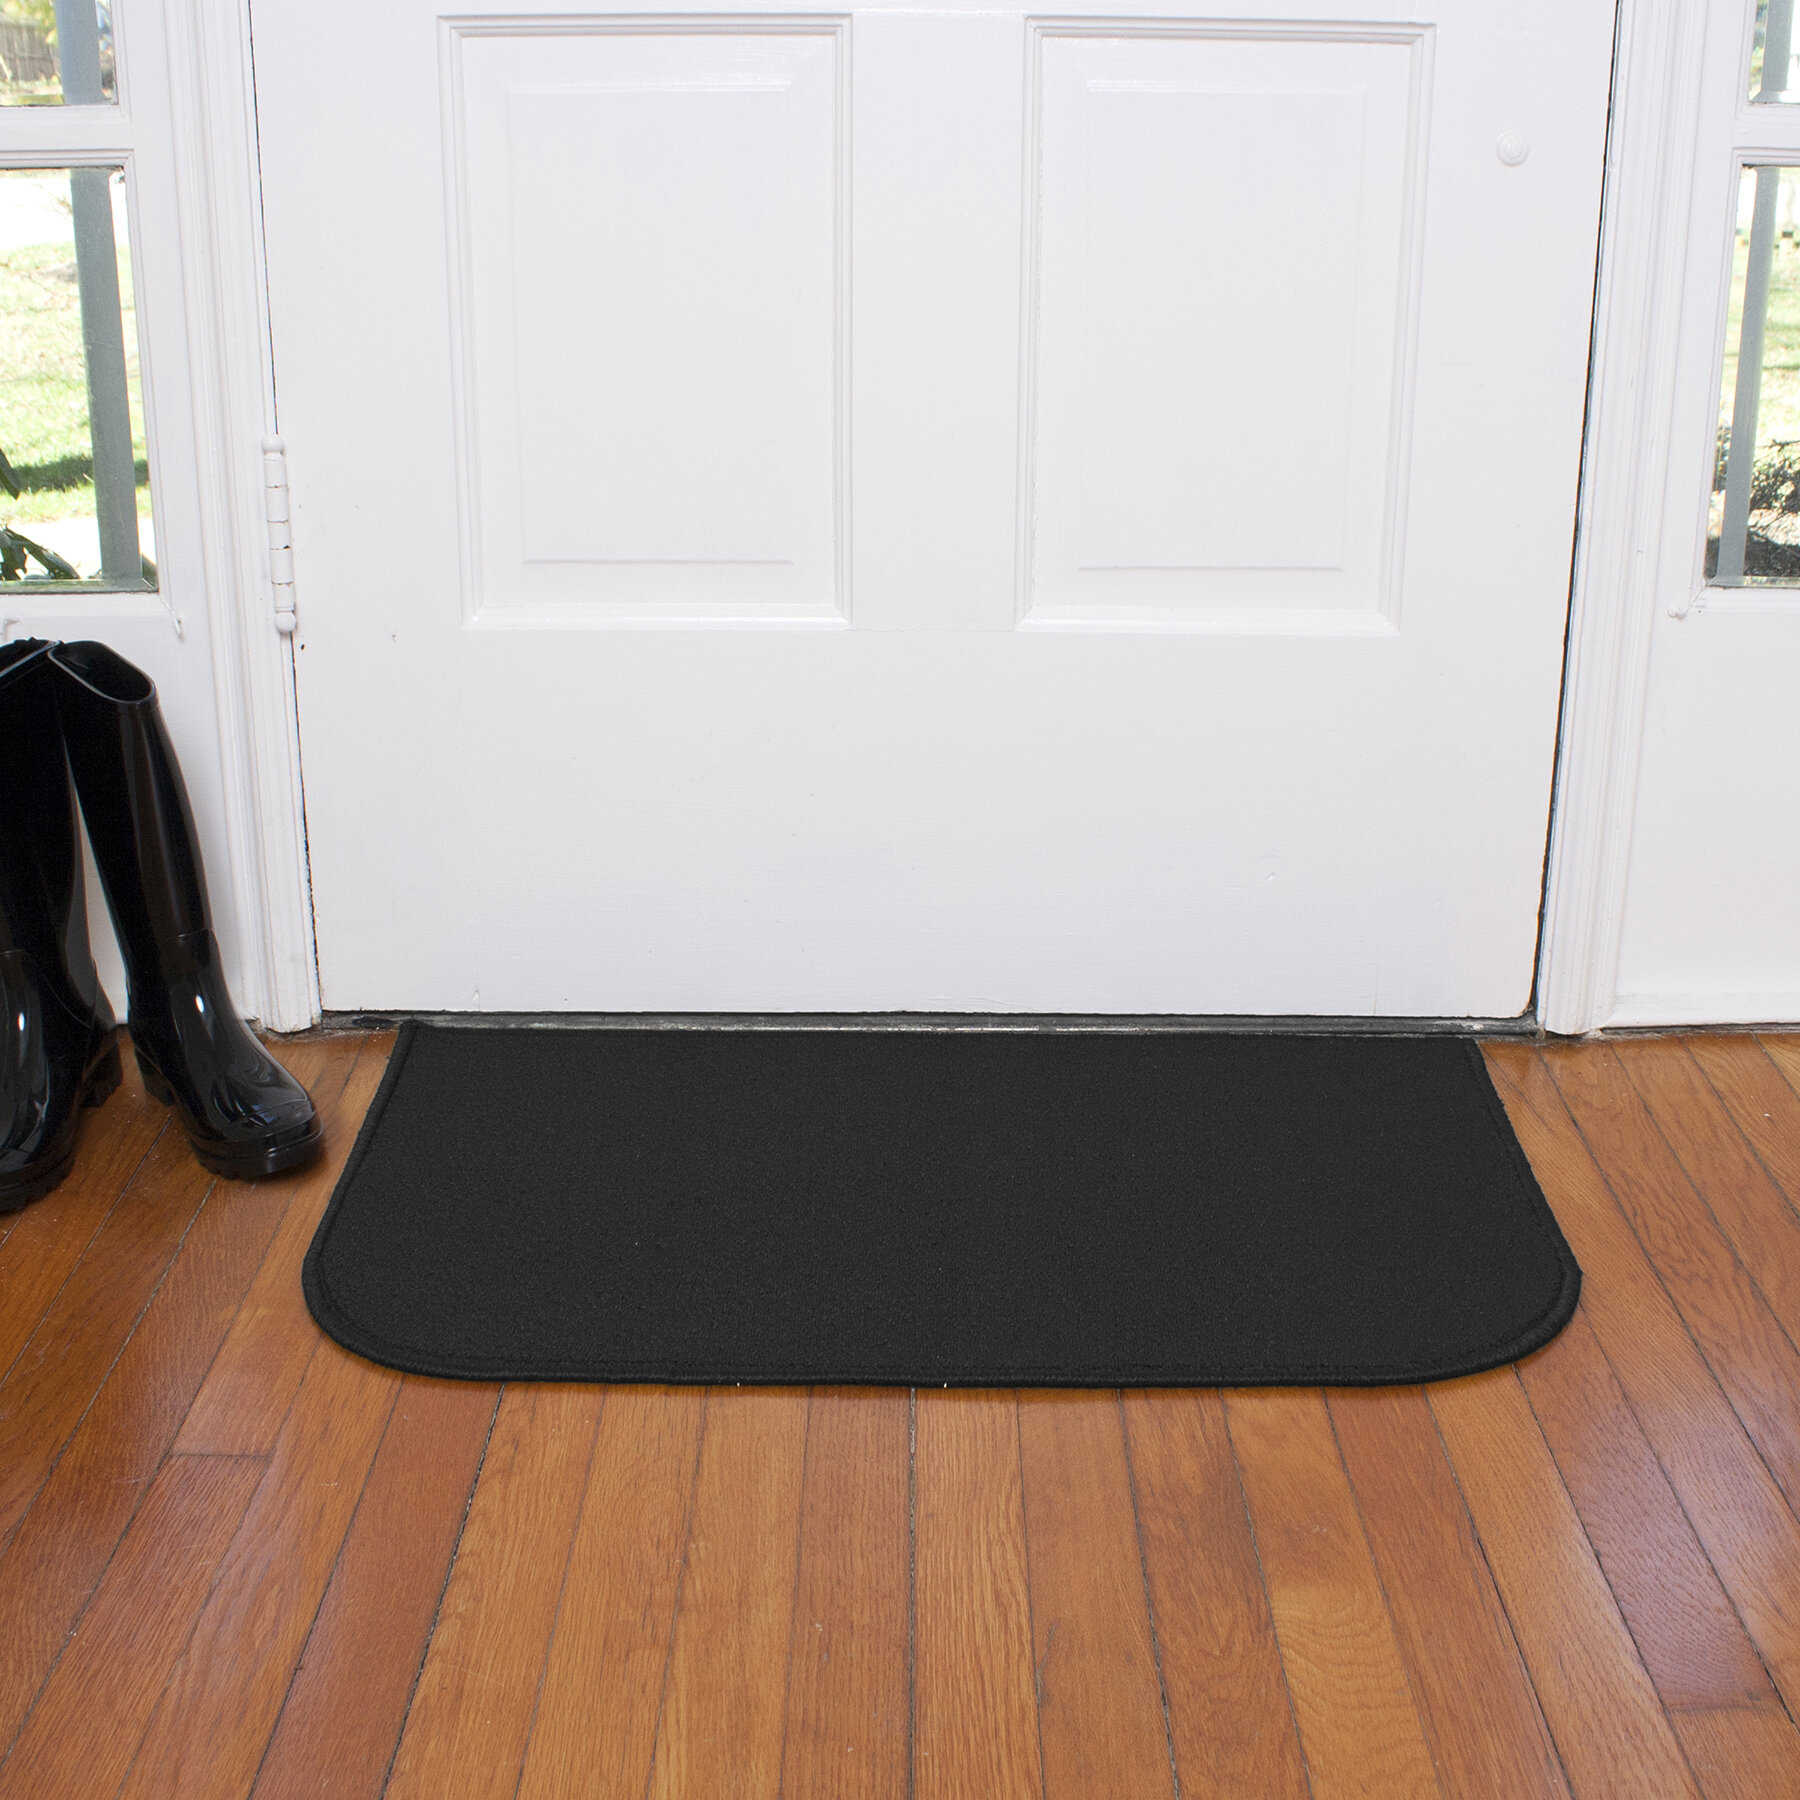 Caire 18 in. x 30 in. Non-Slip Indoor Door Mat The Twillery Co. Color: Black, Mat Size: 3' x 4